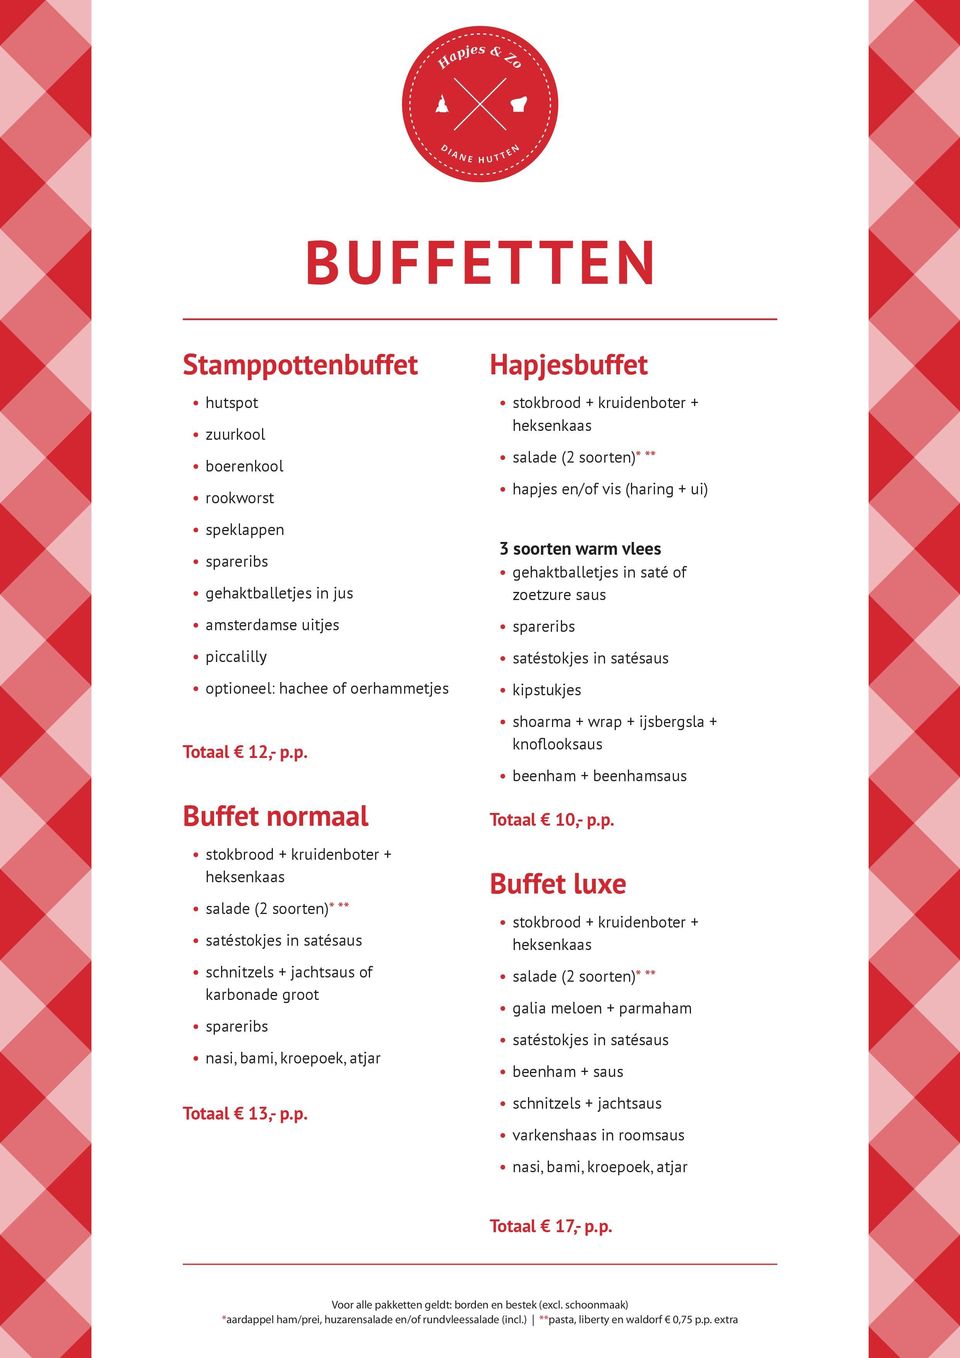 p. Buffet normaal schnitzels + jachtsaus of karbonade groot nasi, bami, kroepoek, atjar Totaal 13,- p.p. Hapjesbuffet hapjes en/of vis (haring + ui) 3 soorten warm